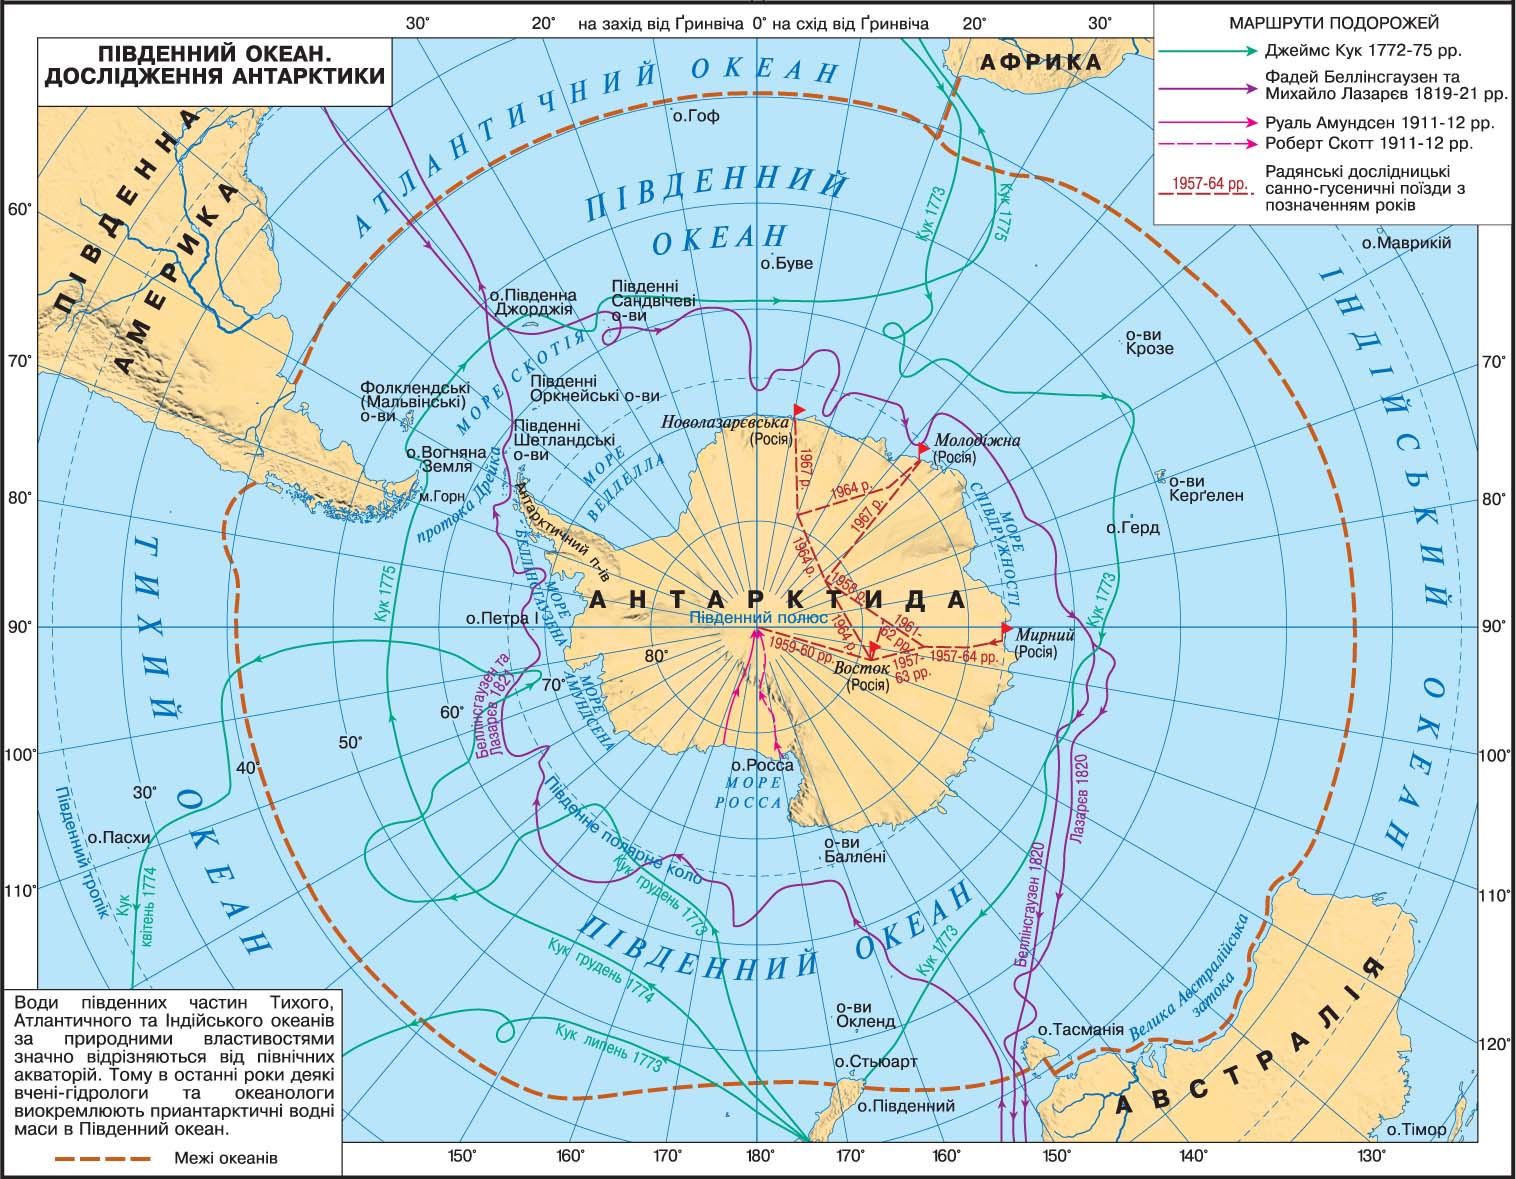 Антарктическое время. Показать на карте Северный Ледовитый океан и Антарктиду. Море Беллинсгаузена — ; море Амундсена —. Границы Южного океана на карте.